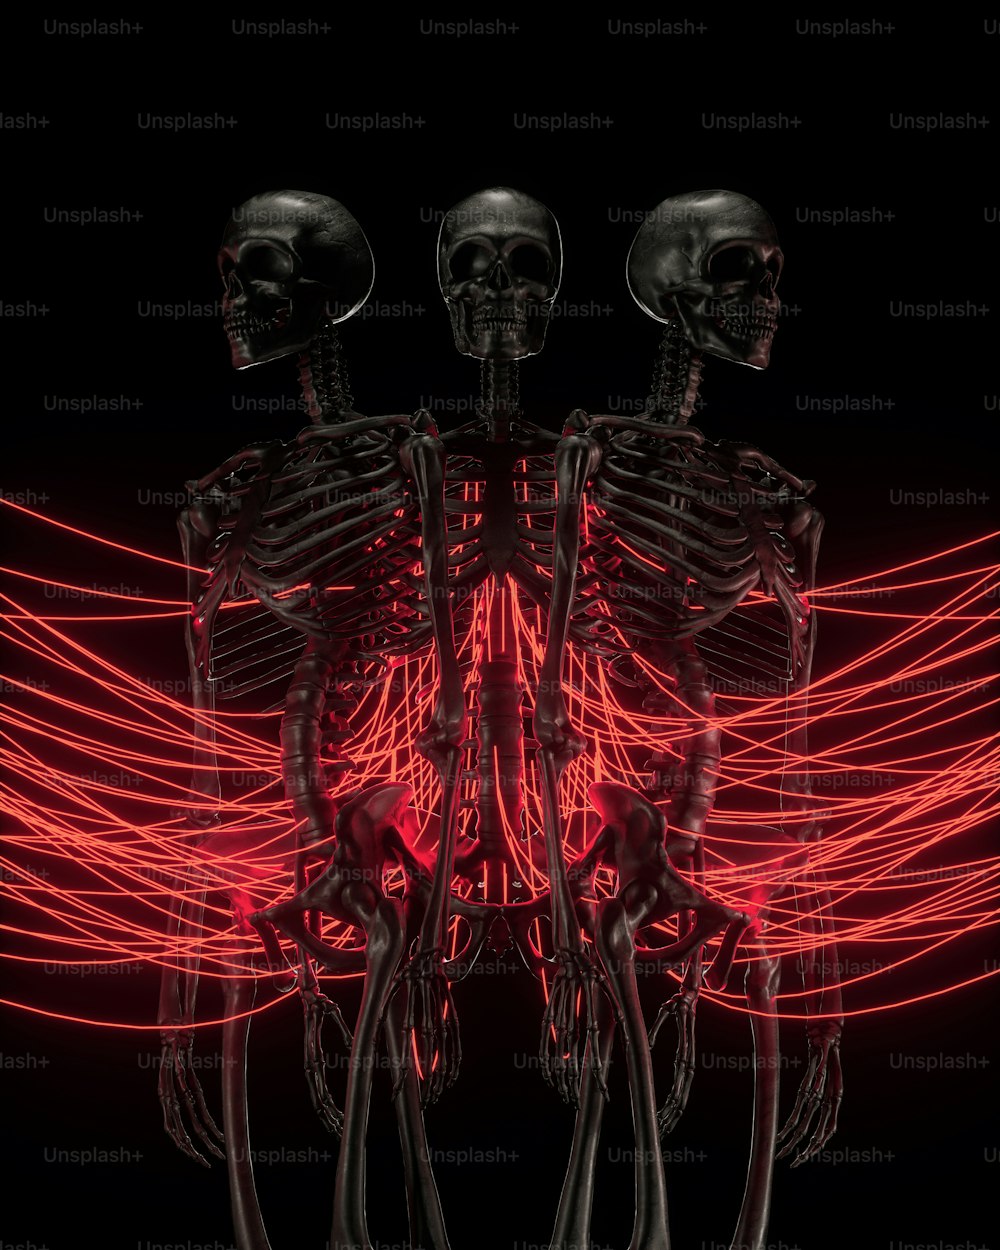 uma imagem gerada por computador de um esqueleto humano